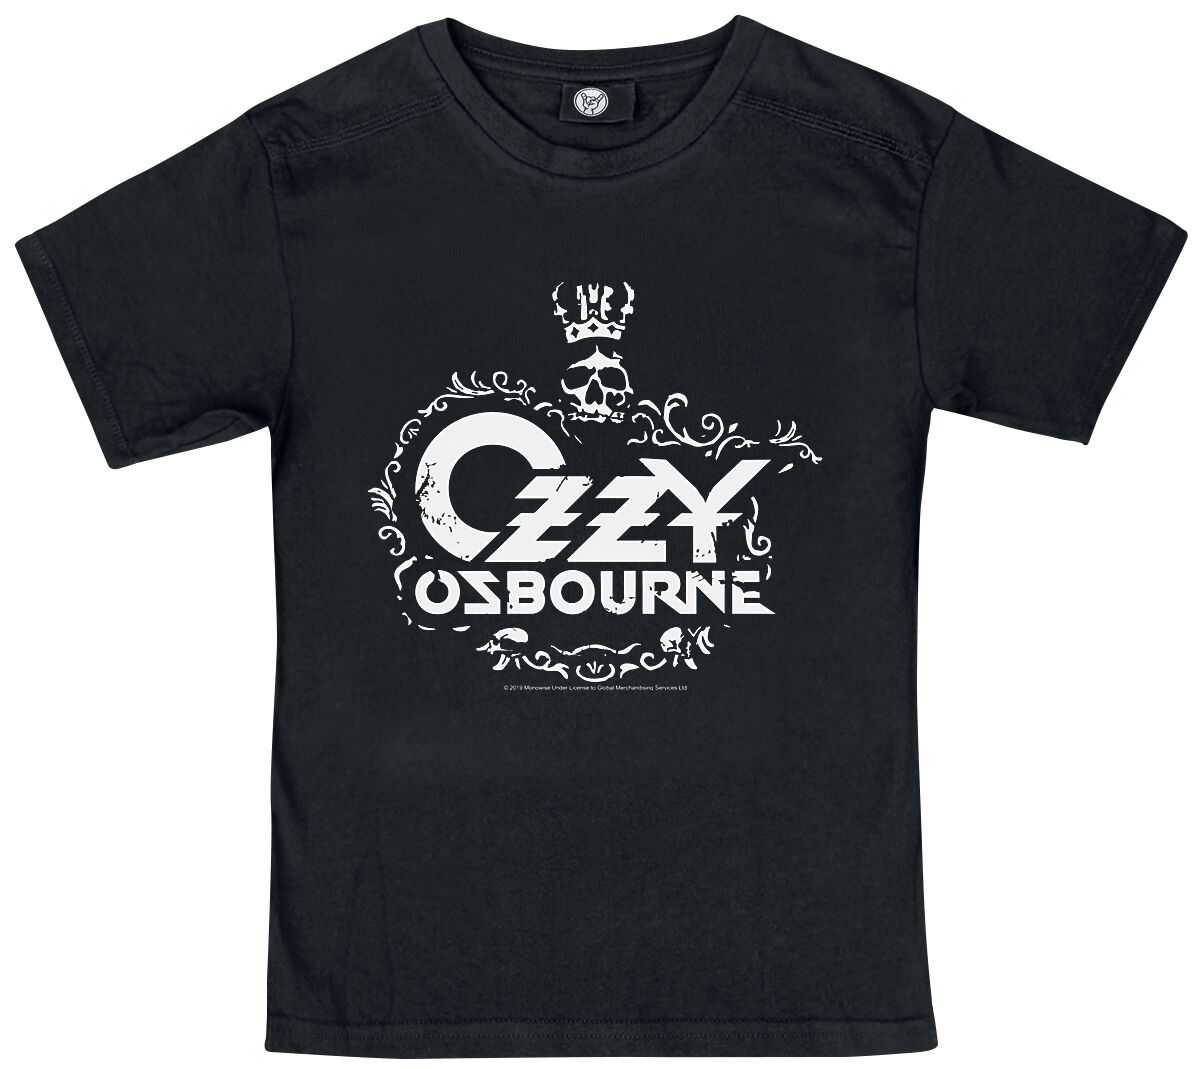 T-shirt de Ozzy Osbourne - Metal Kids - Skull - 92 - pour filles & garçonse - noir